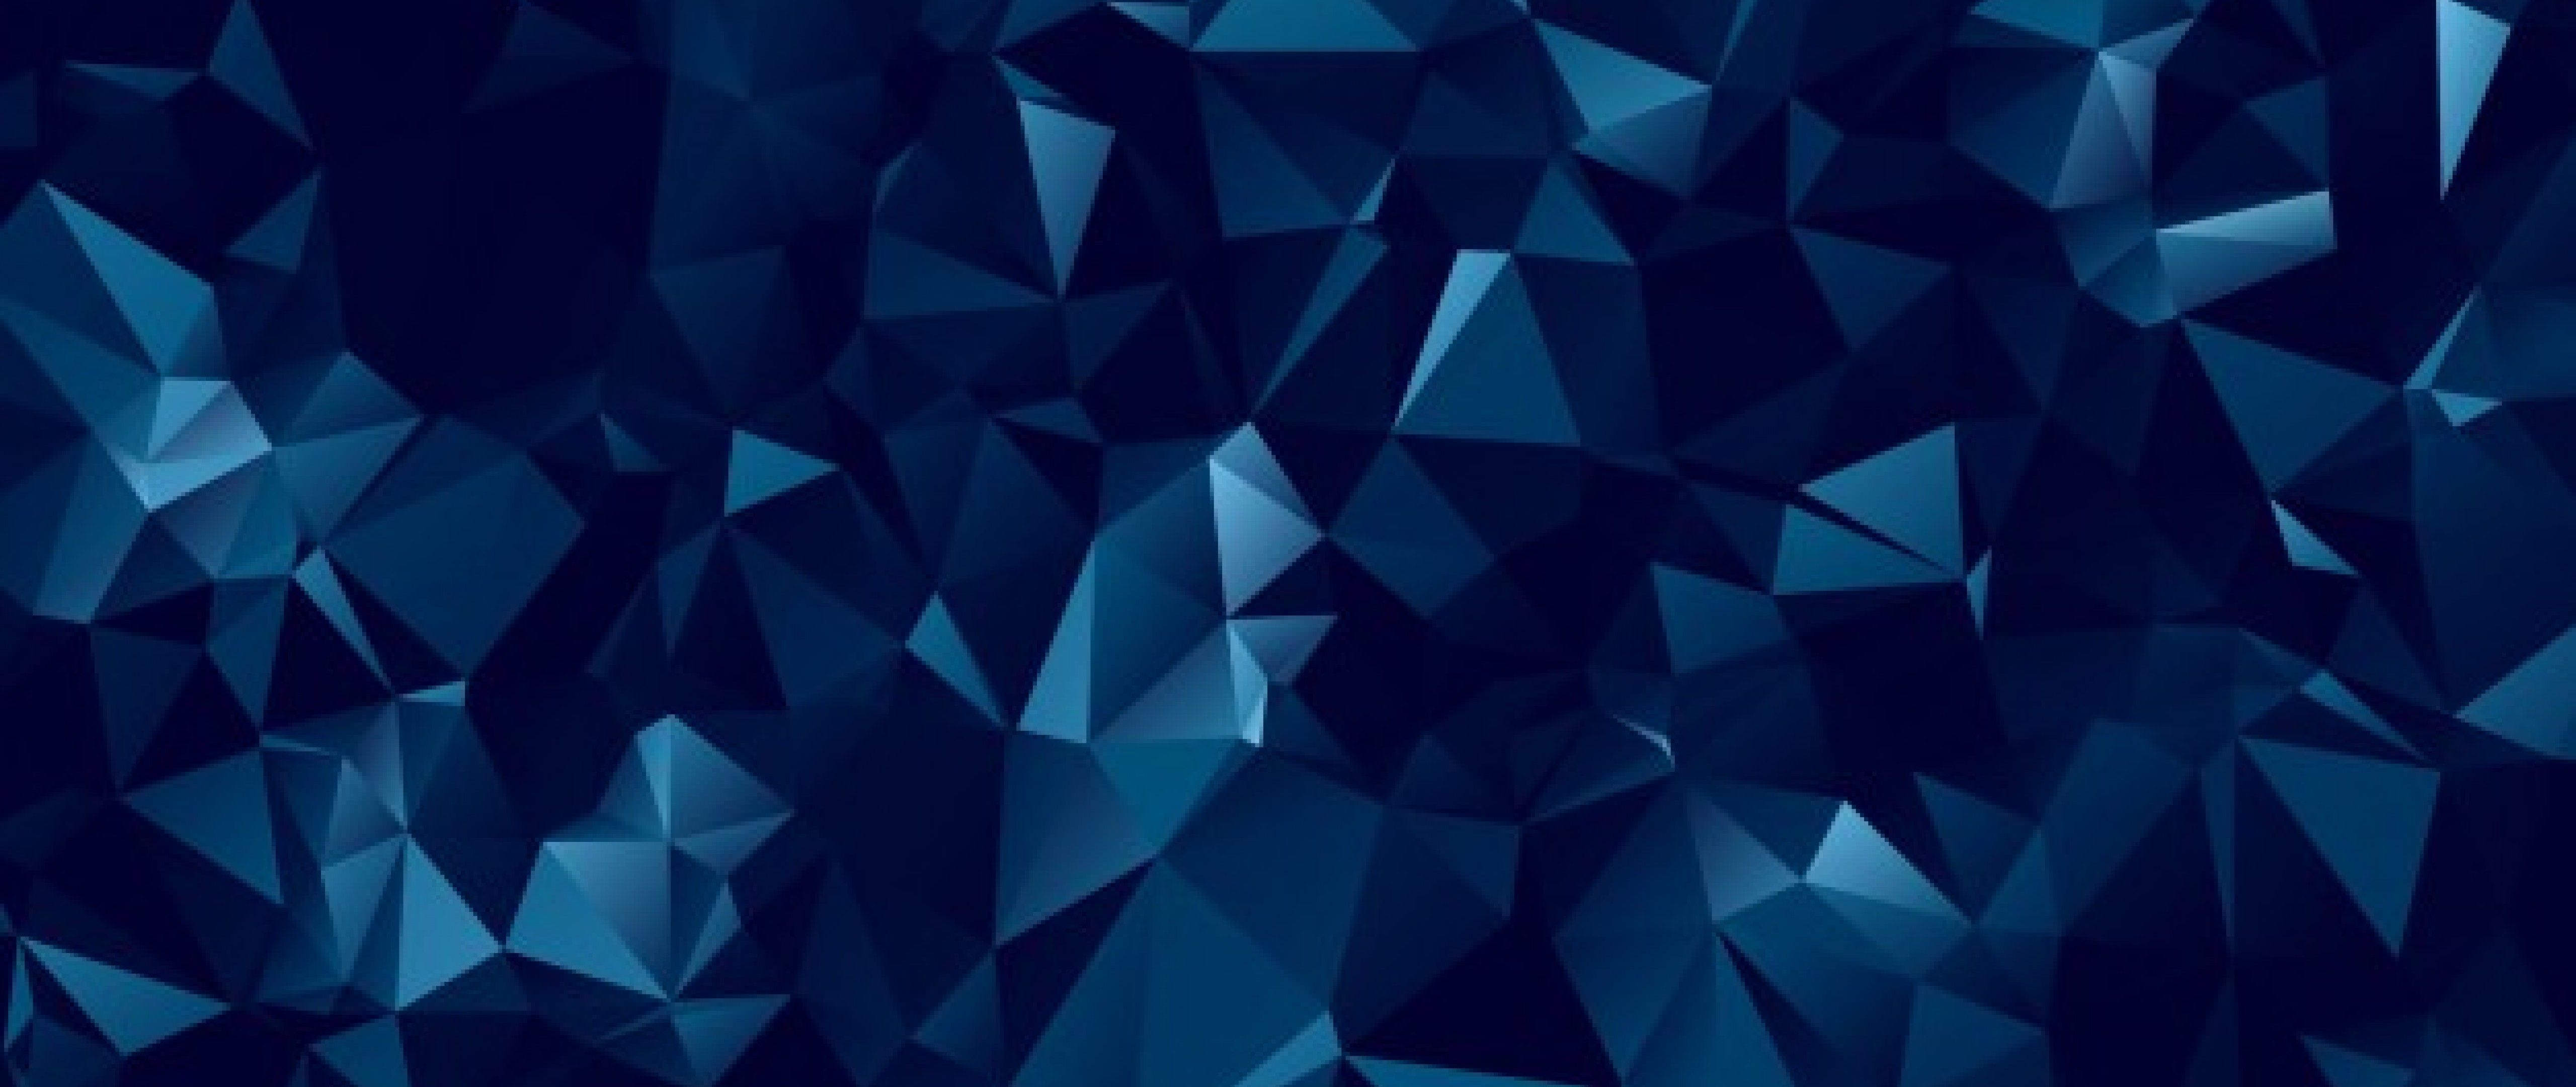 Dark blue polygonal HD Wallpaper 4K .wallpaper.net